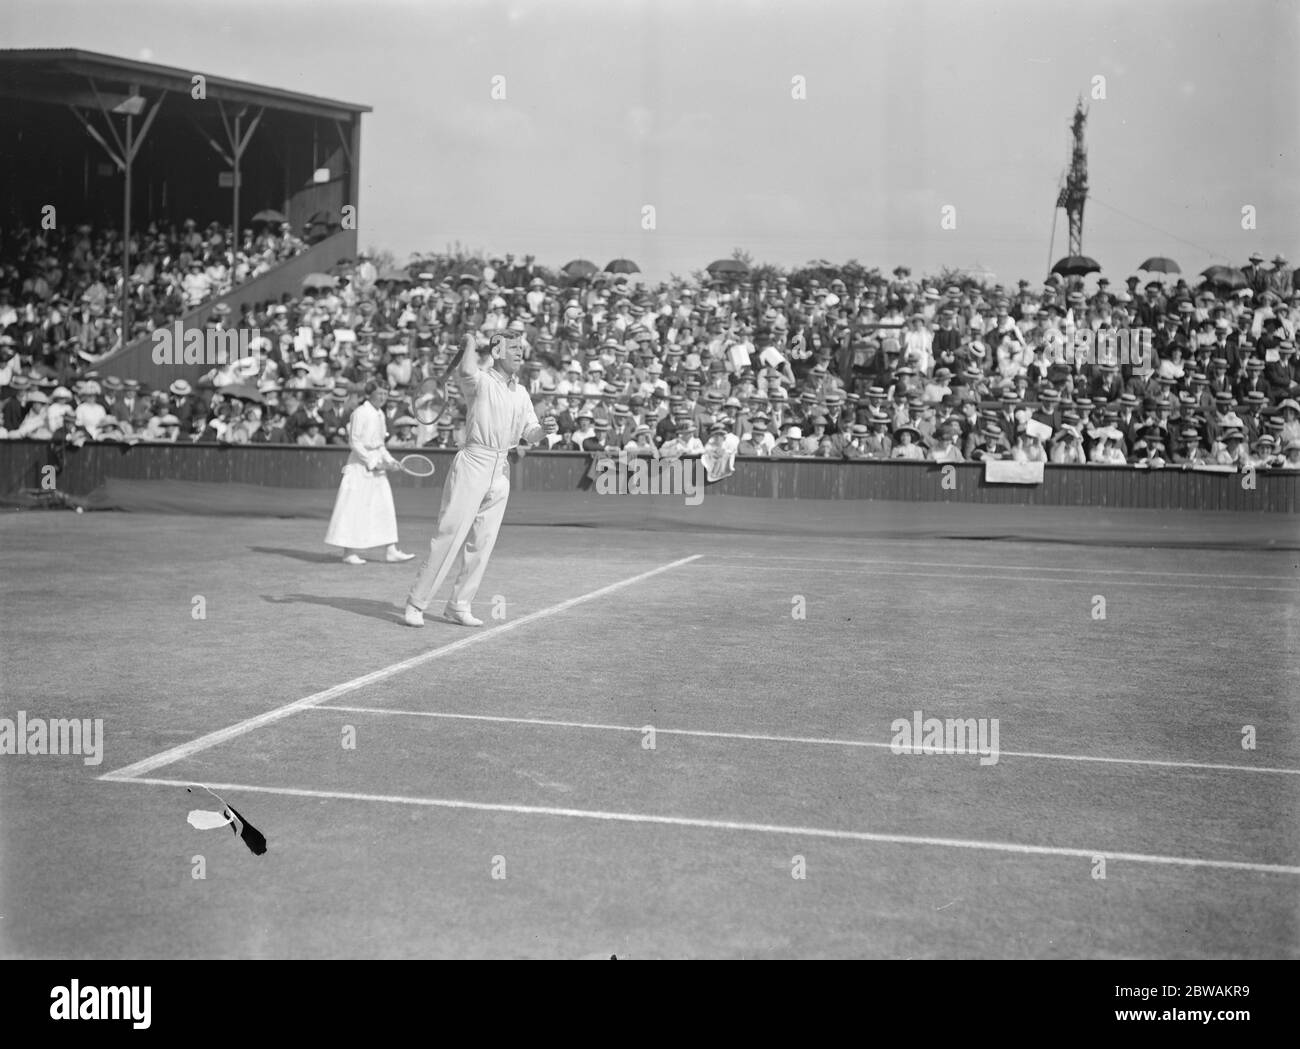 Championnats de tennis sur gazon à Wimbledon Doust Banque D'Images